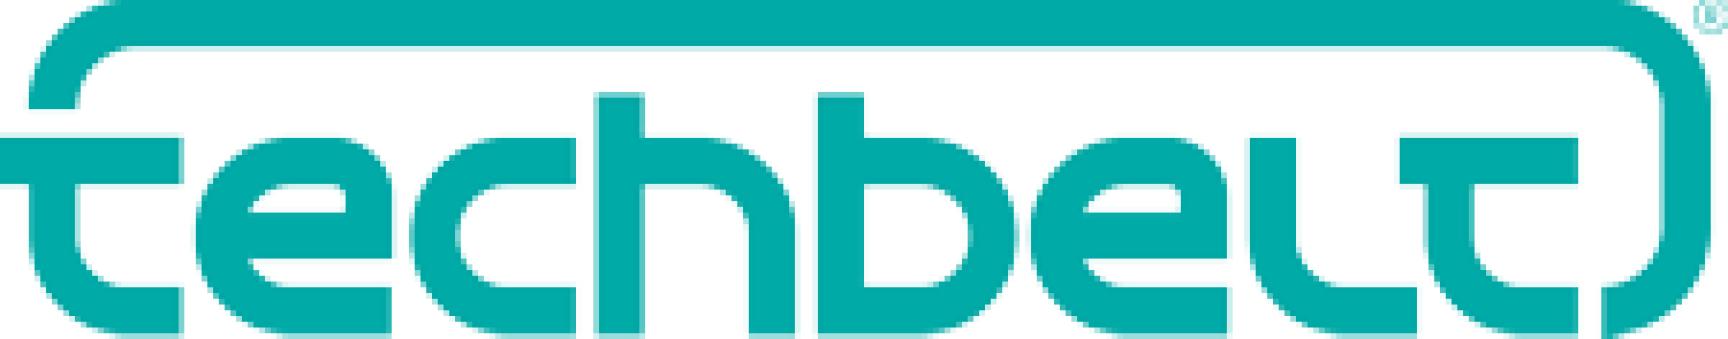 techbelt-logo-300